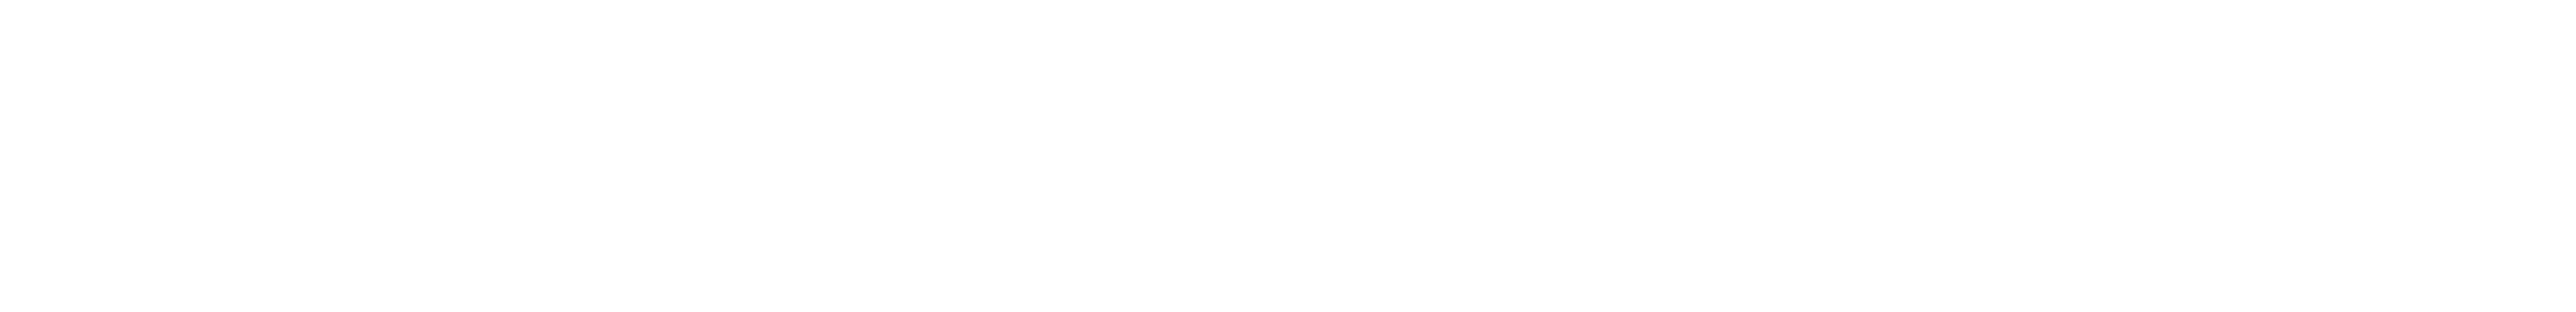 Will's Vegan Store DE logo